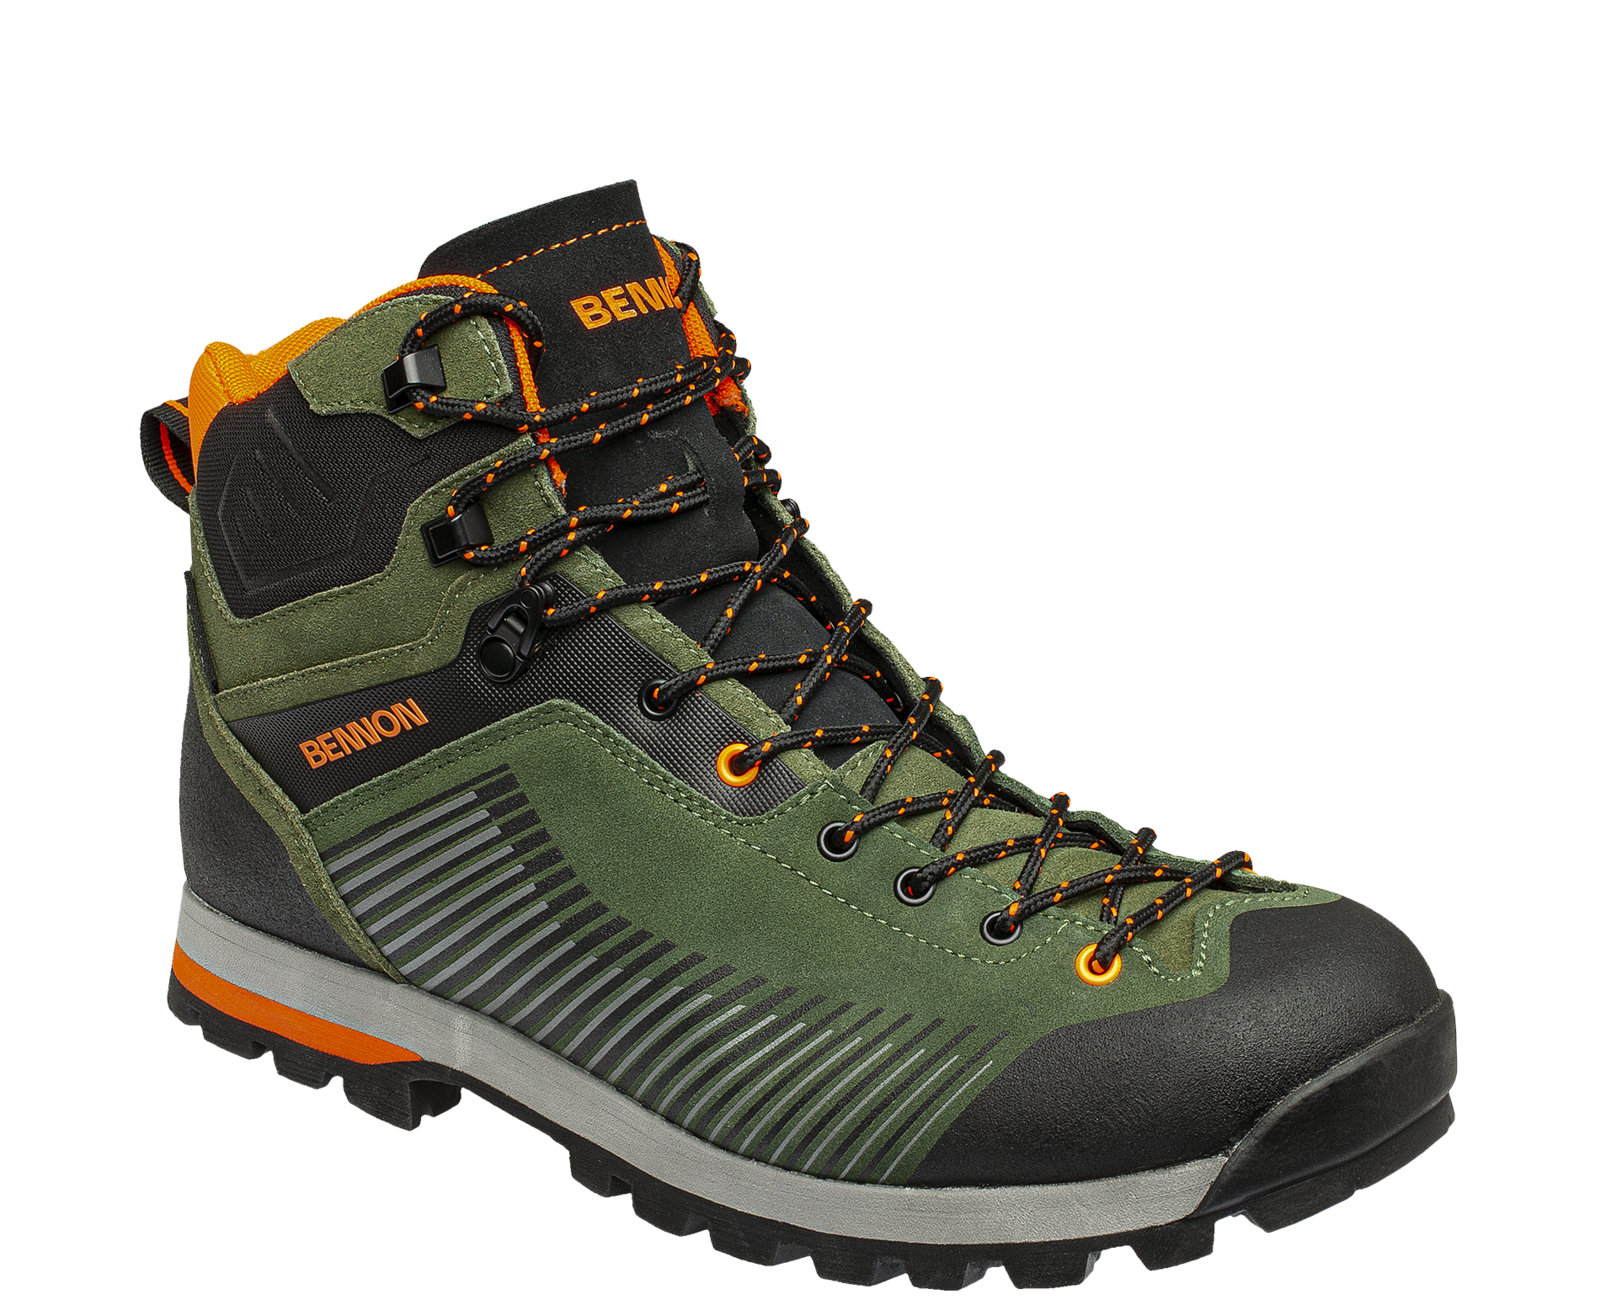 Kožená členková obuv s membránou Bennon Peak Green High - veľkosť: 40, farba: khaki/oranžová